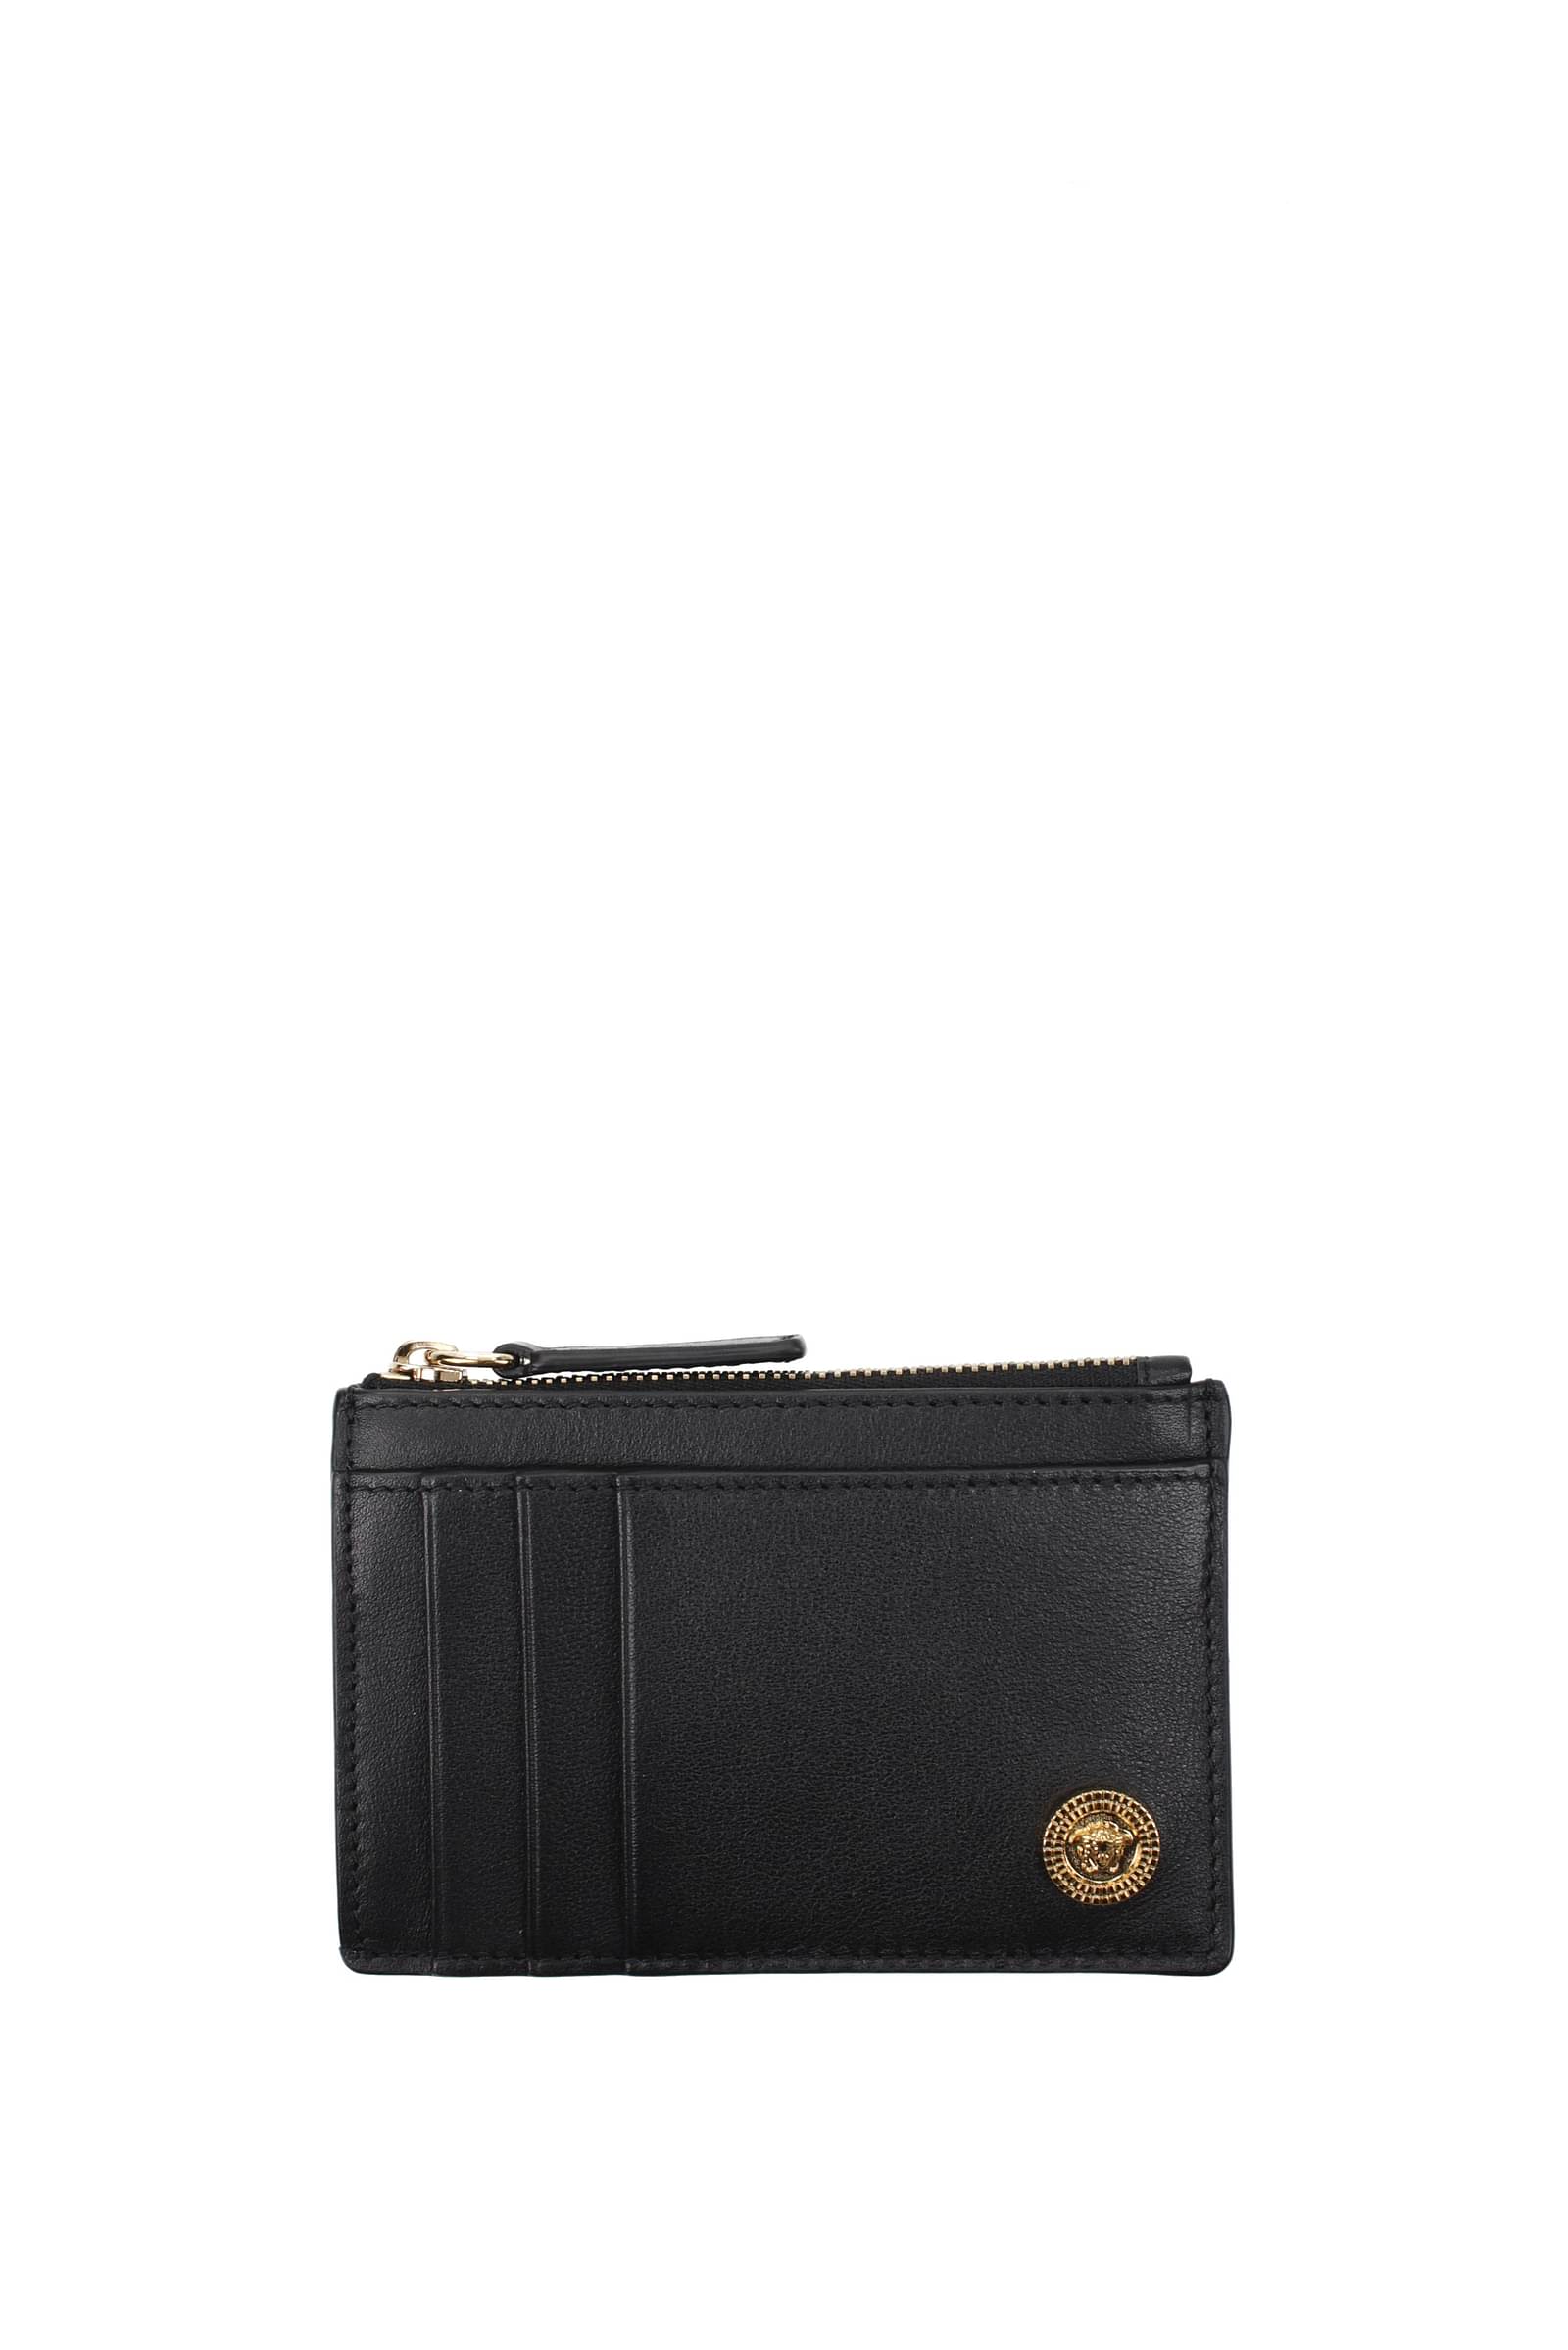 Versace Black Wallet for Men | Lyst